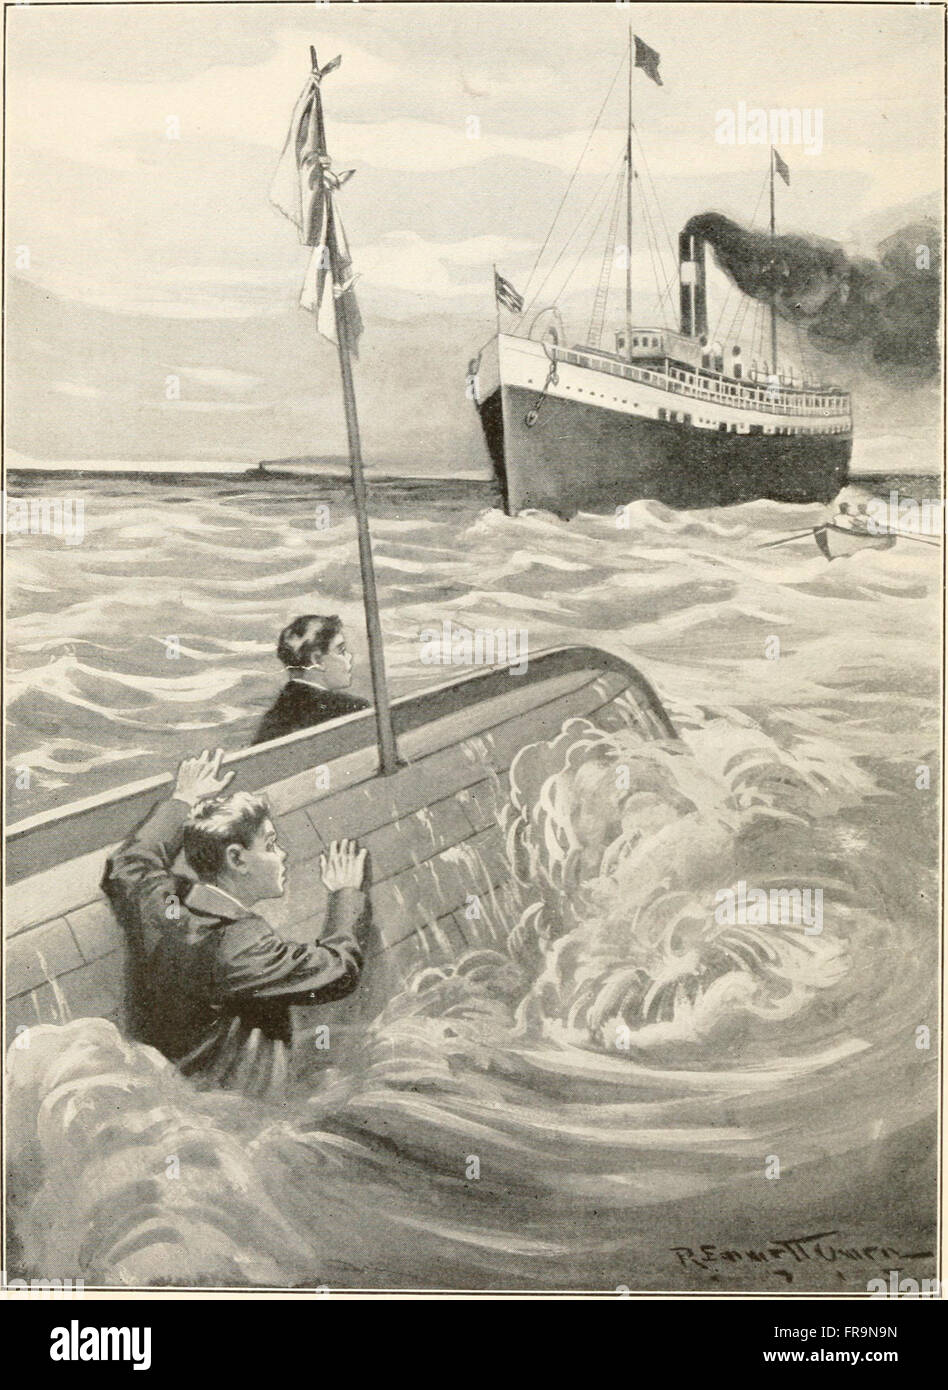 The go ahead boys on Smugglers' Island (1916) Stock Photo